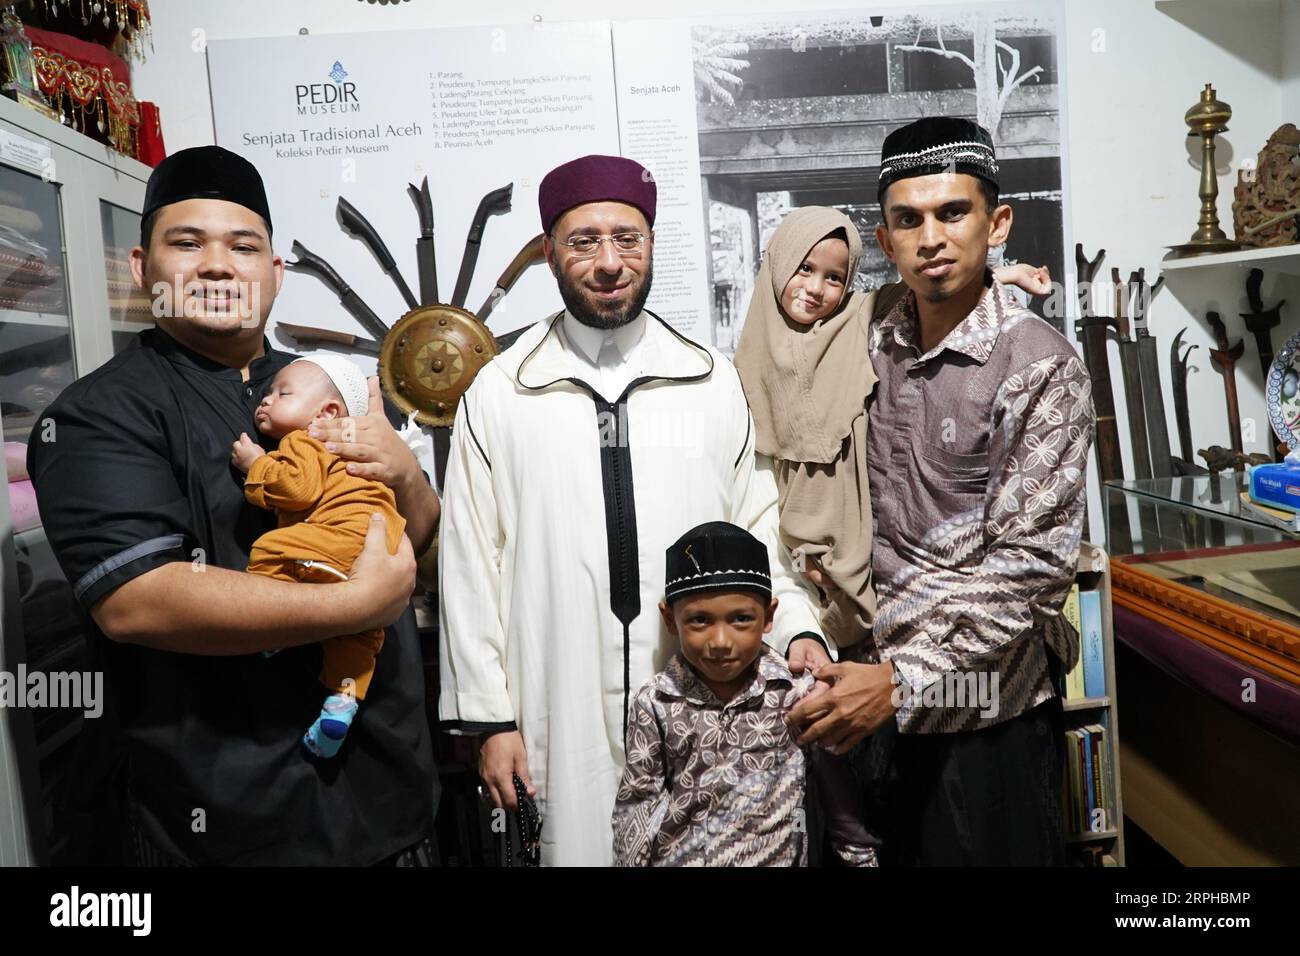 Scheich Usama Elsayed Alazary mit Mitarbeitern des Pedir and Mapesa Museum Banda Aceh, Indonesien Stockfoto